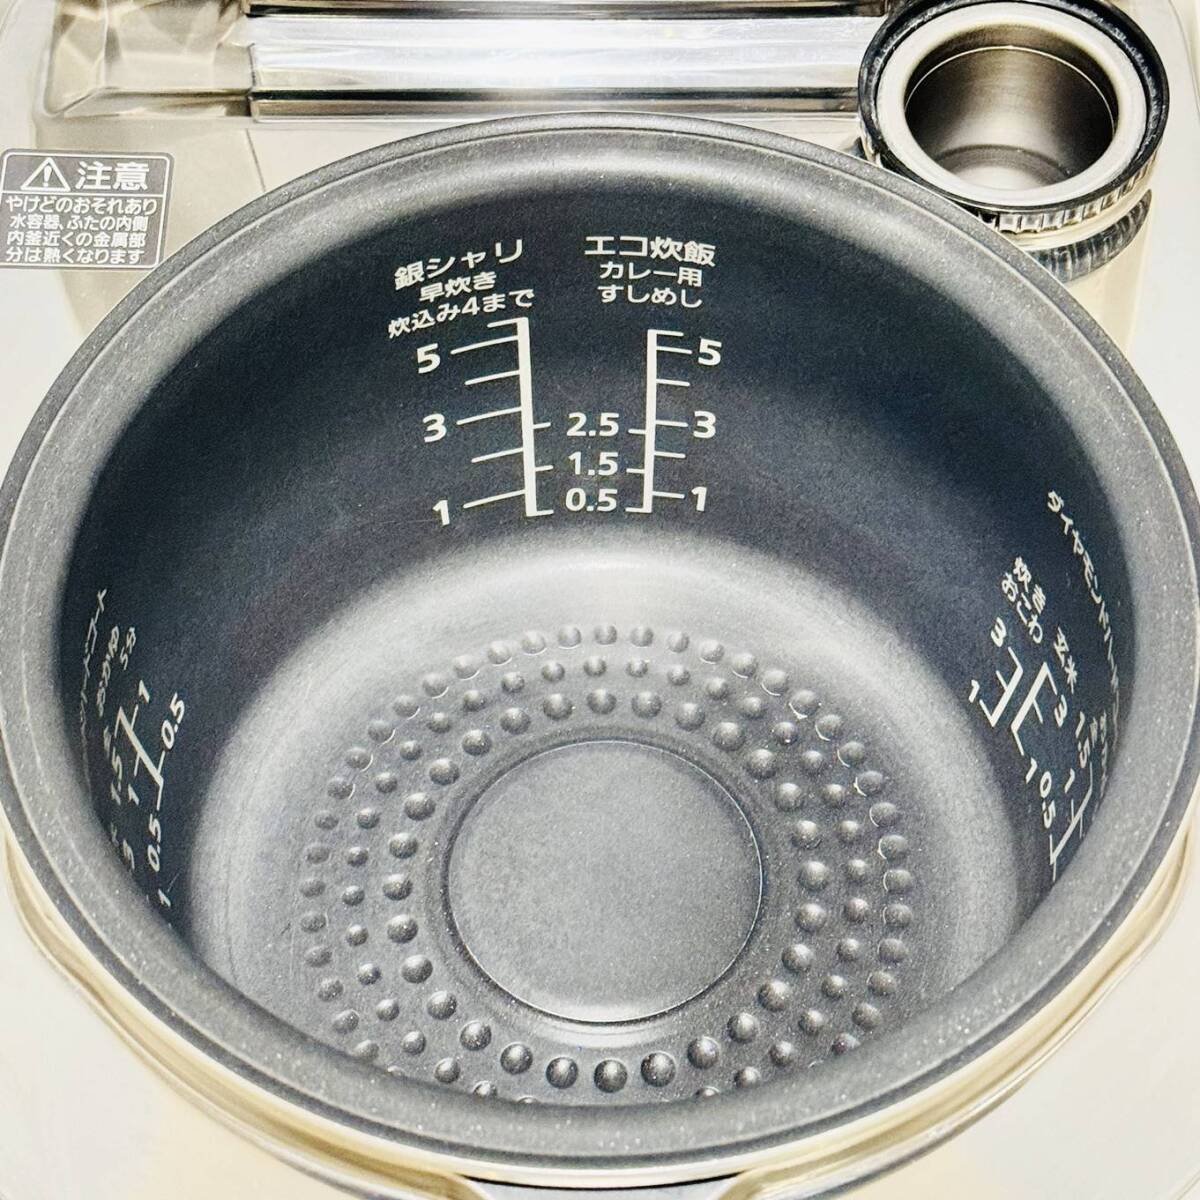 甲HK9975 美品 クリーニング済 動作確認済 2013年製 5.5合炊 パナソニック Panasonic スチームIHジャー炊飯器 SR-SH103 ホワイトの画像4